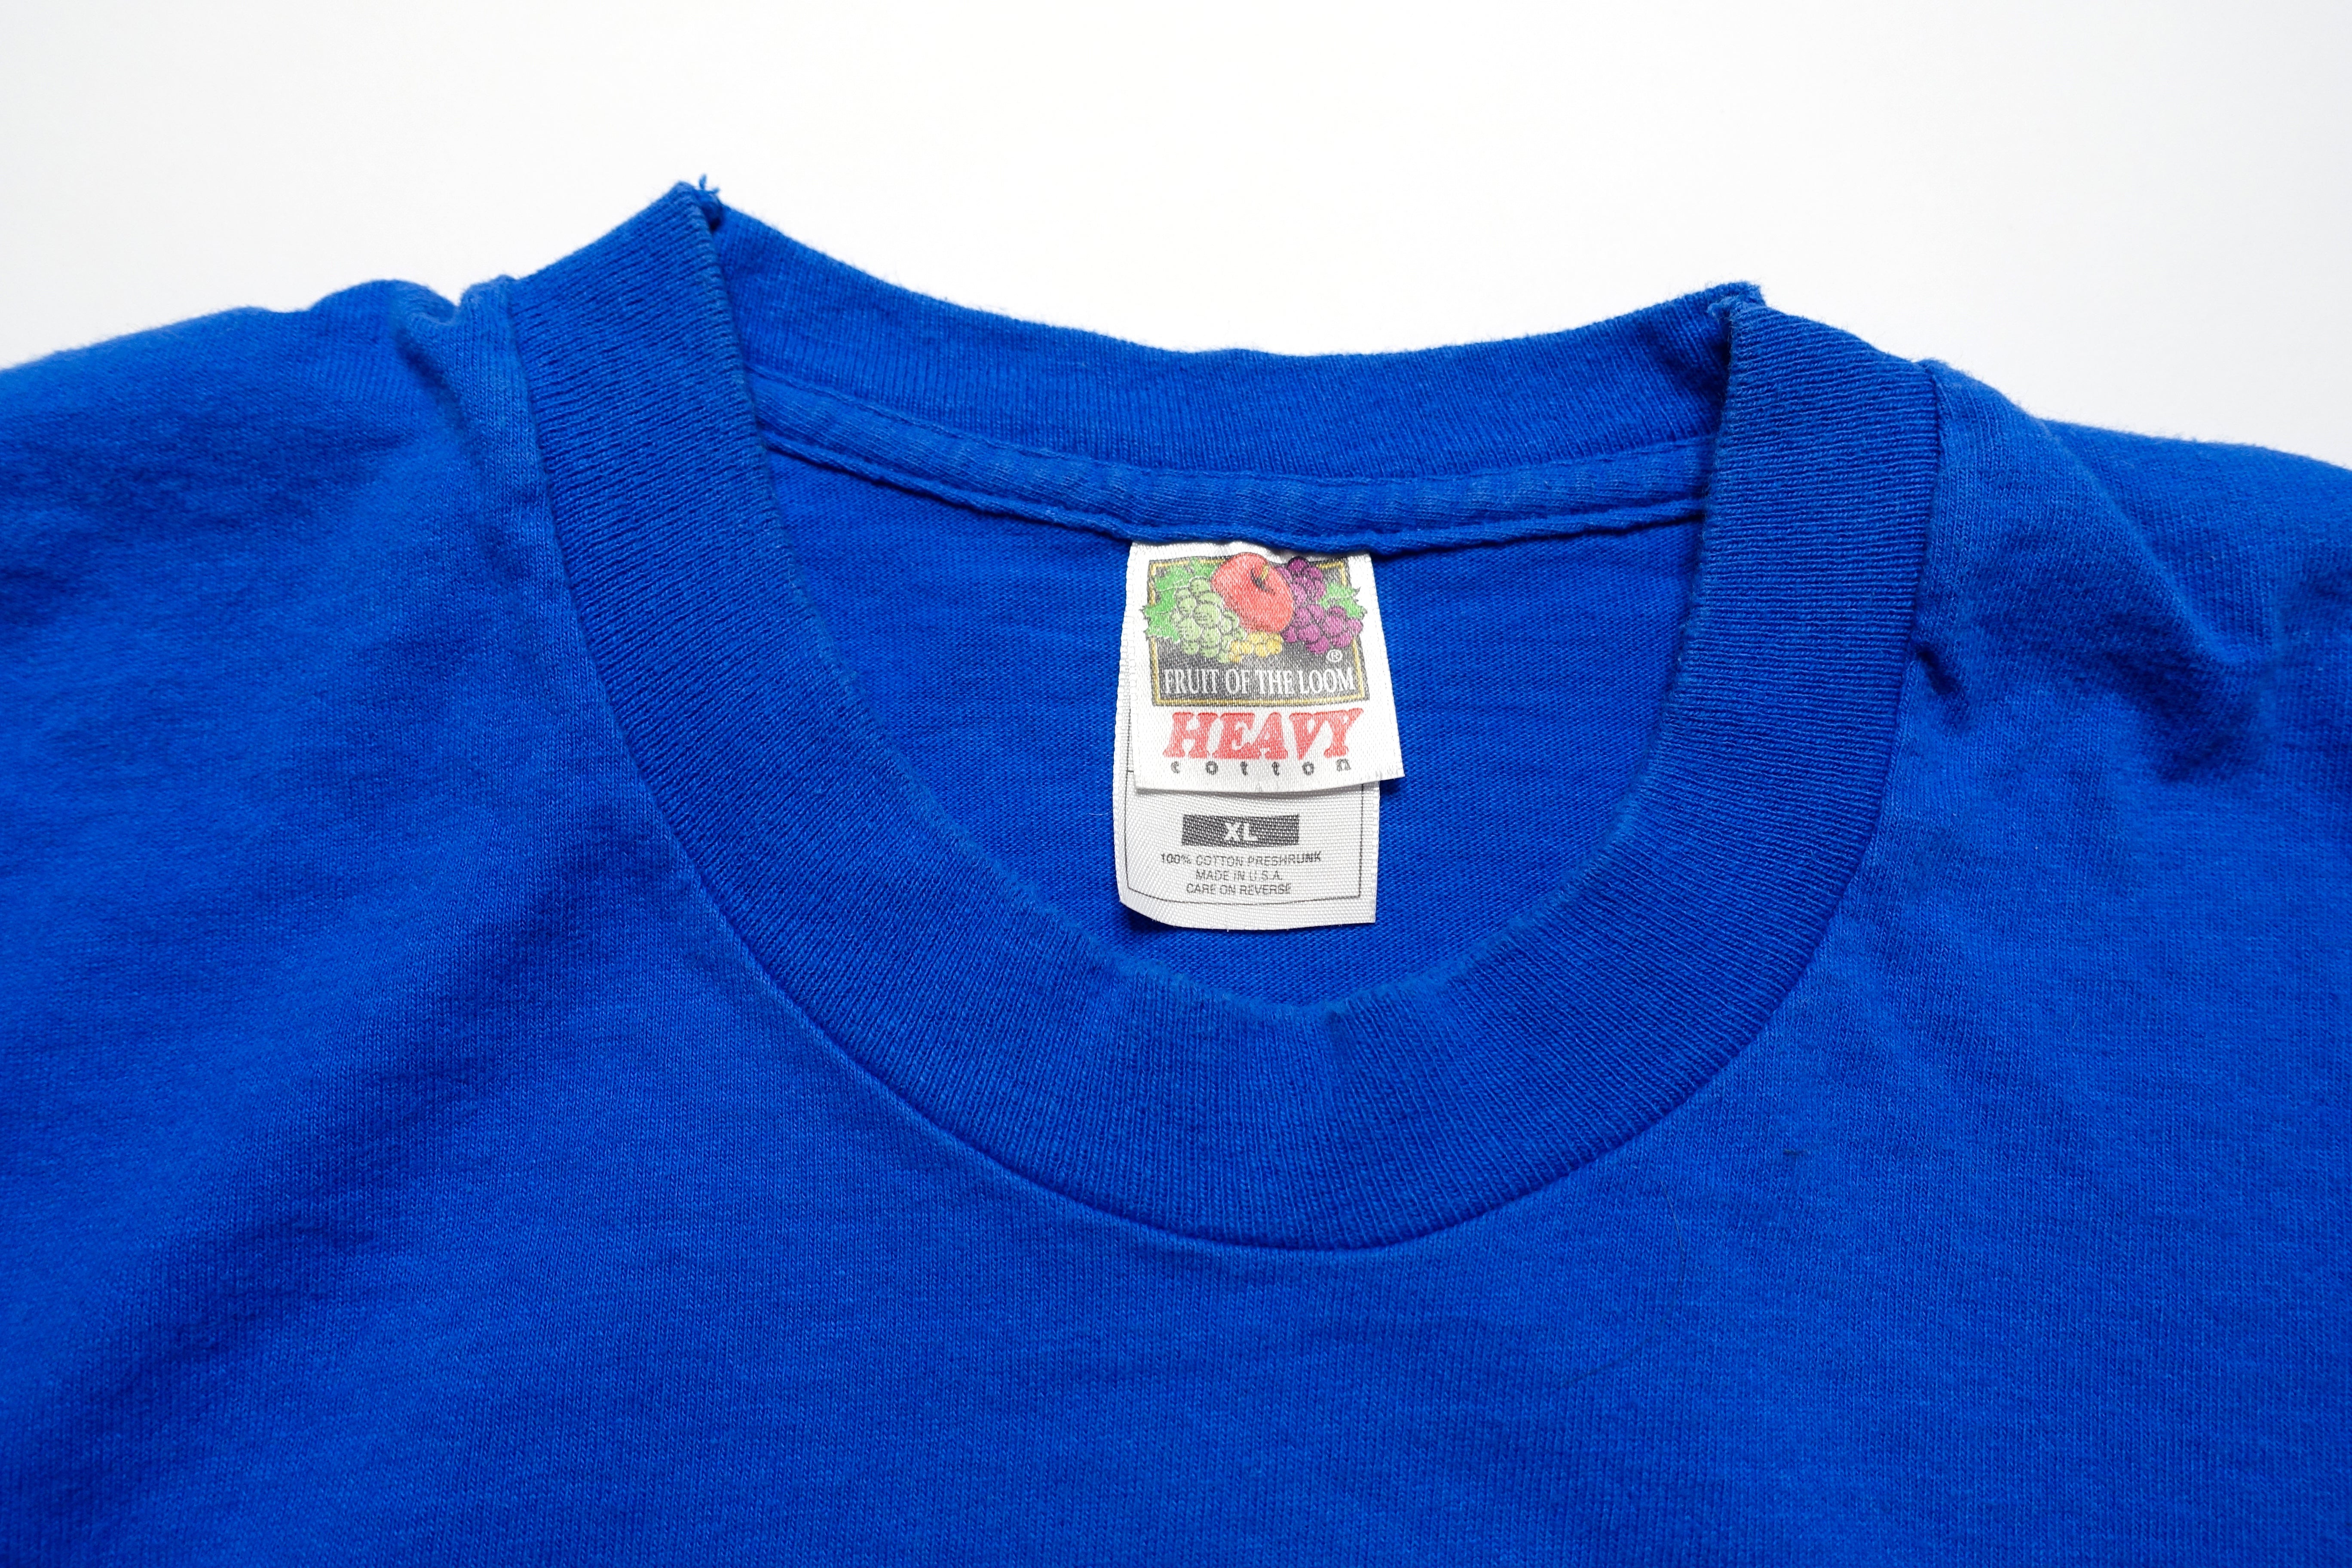 Beck ‎– Odelay February US 1997 Tour Shirt Blue Size XL